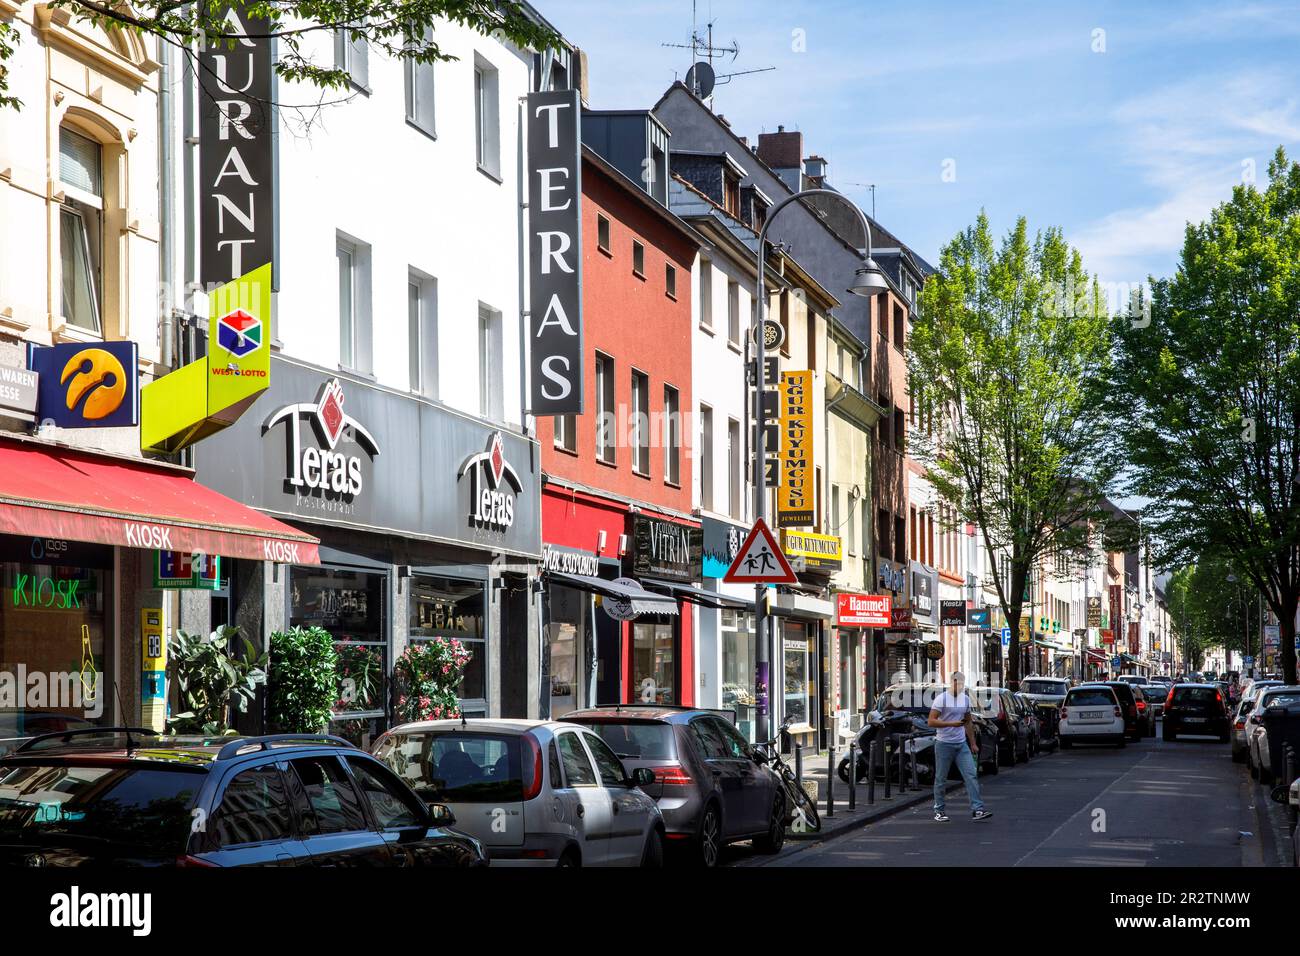 La rue Keup avec de nombreux magasins et restaurants turcs dans le quartier de Muelheim, Cologne, Allemagne. Die Keupstrasse mit vielen tuerkischen Geschaef Banque D'Images